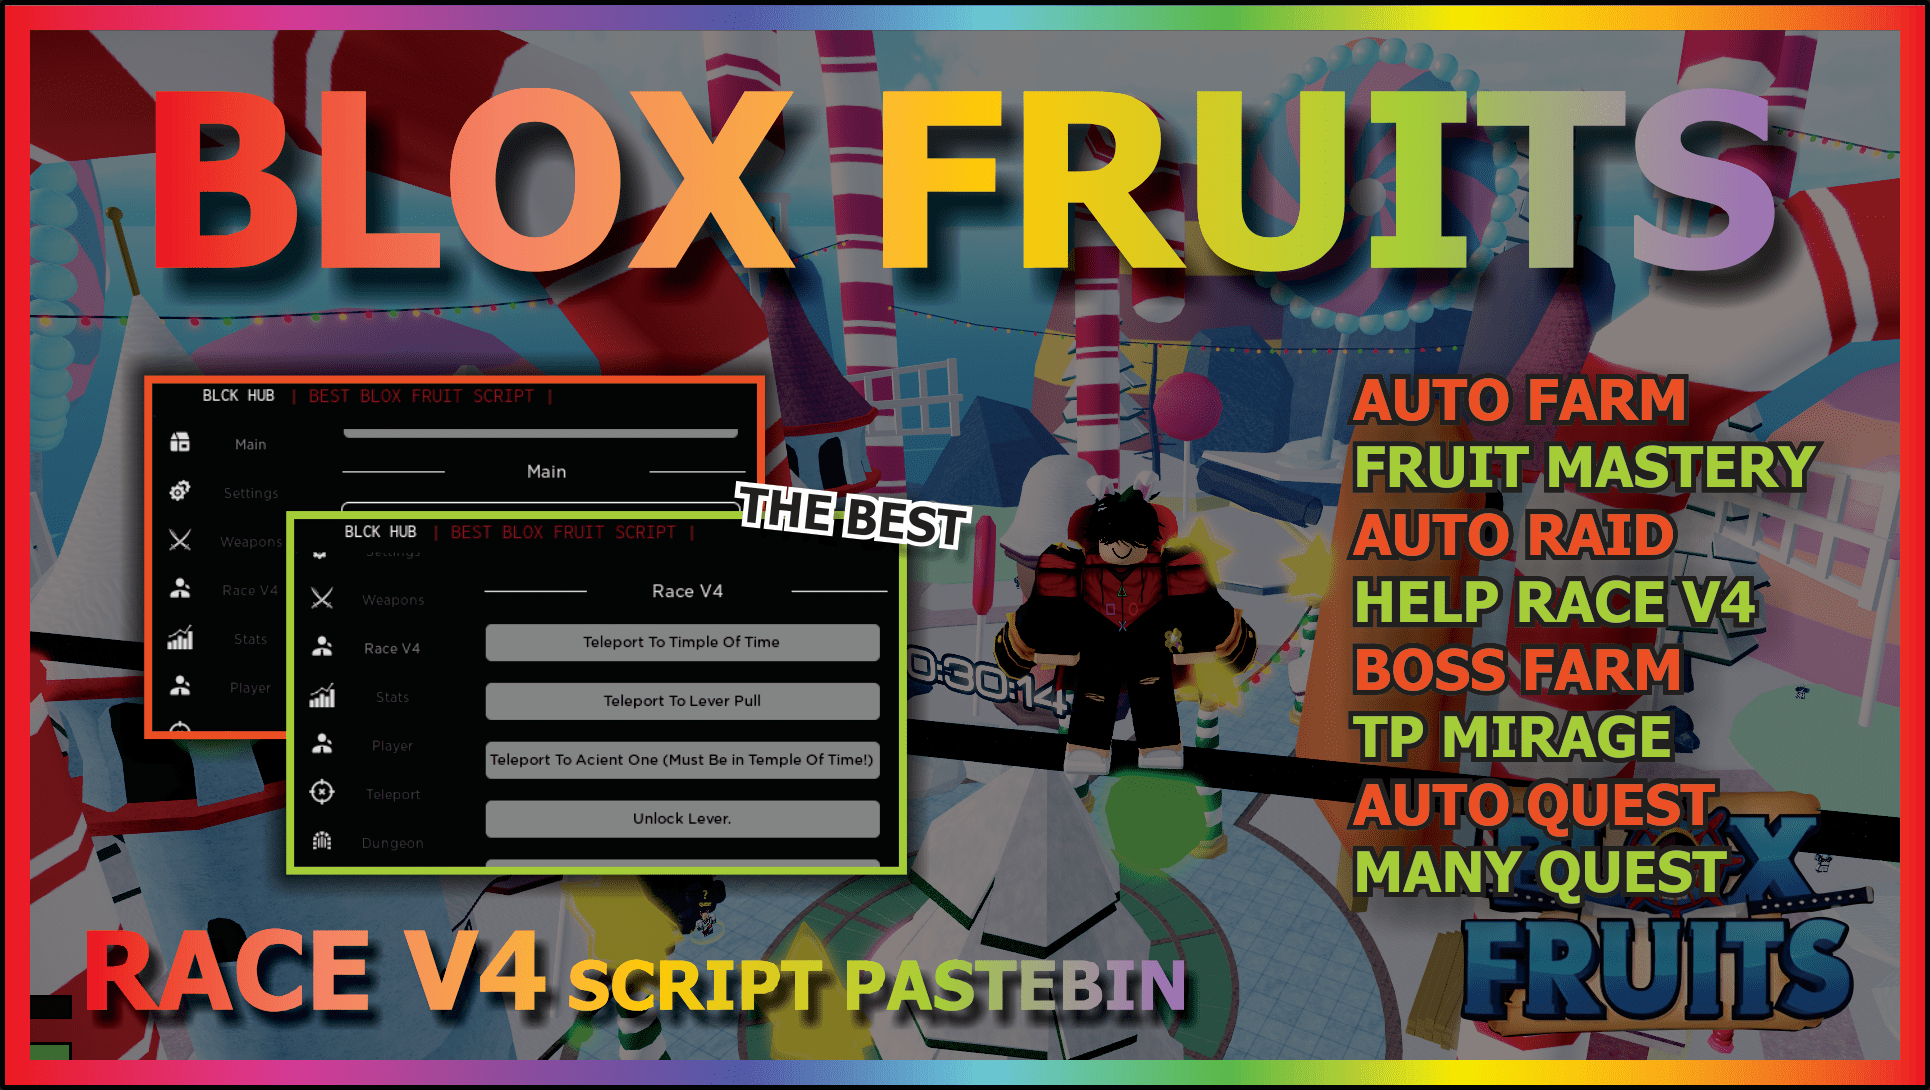 Blox Fruit Script Auto Race V4!!! Latest Version No Banned (Mobile